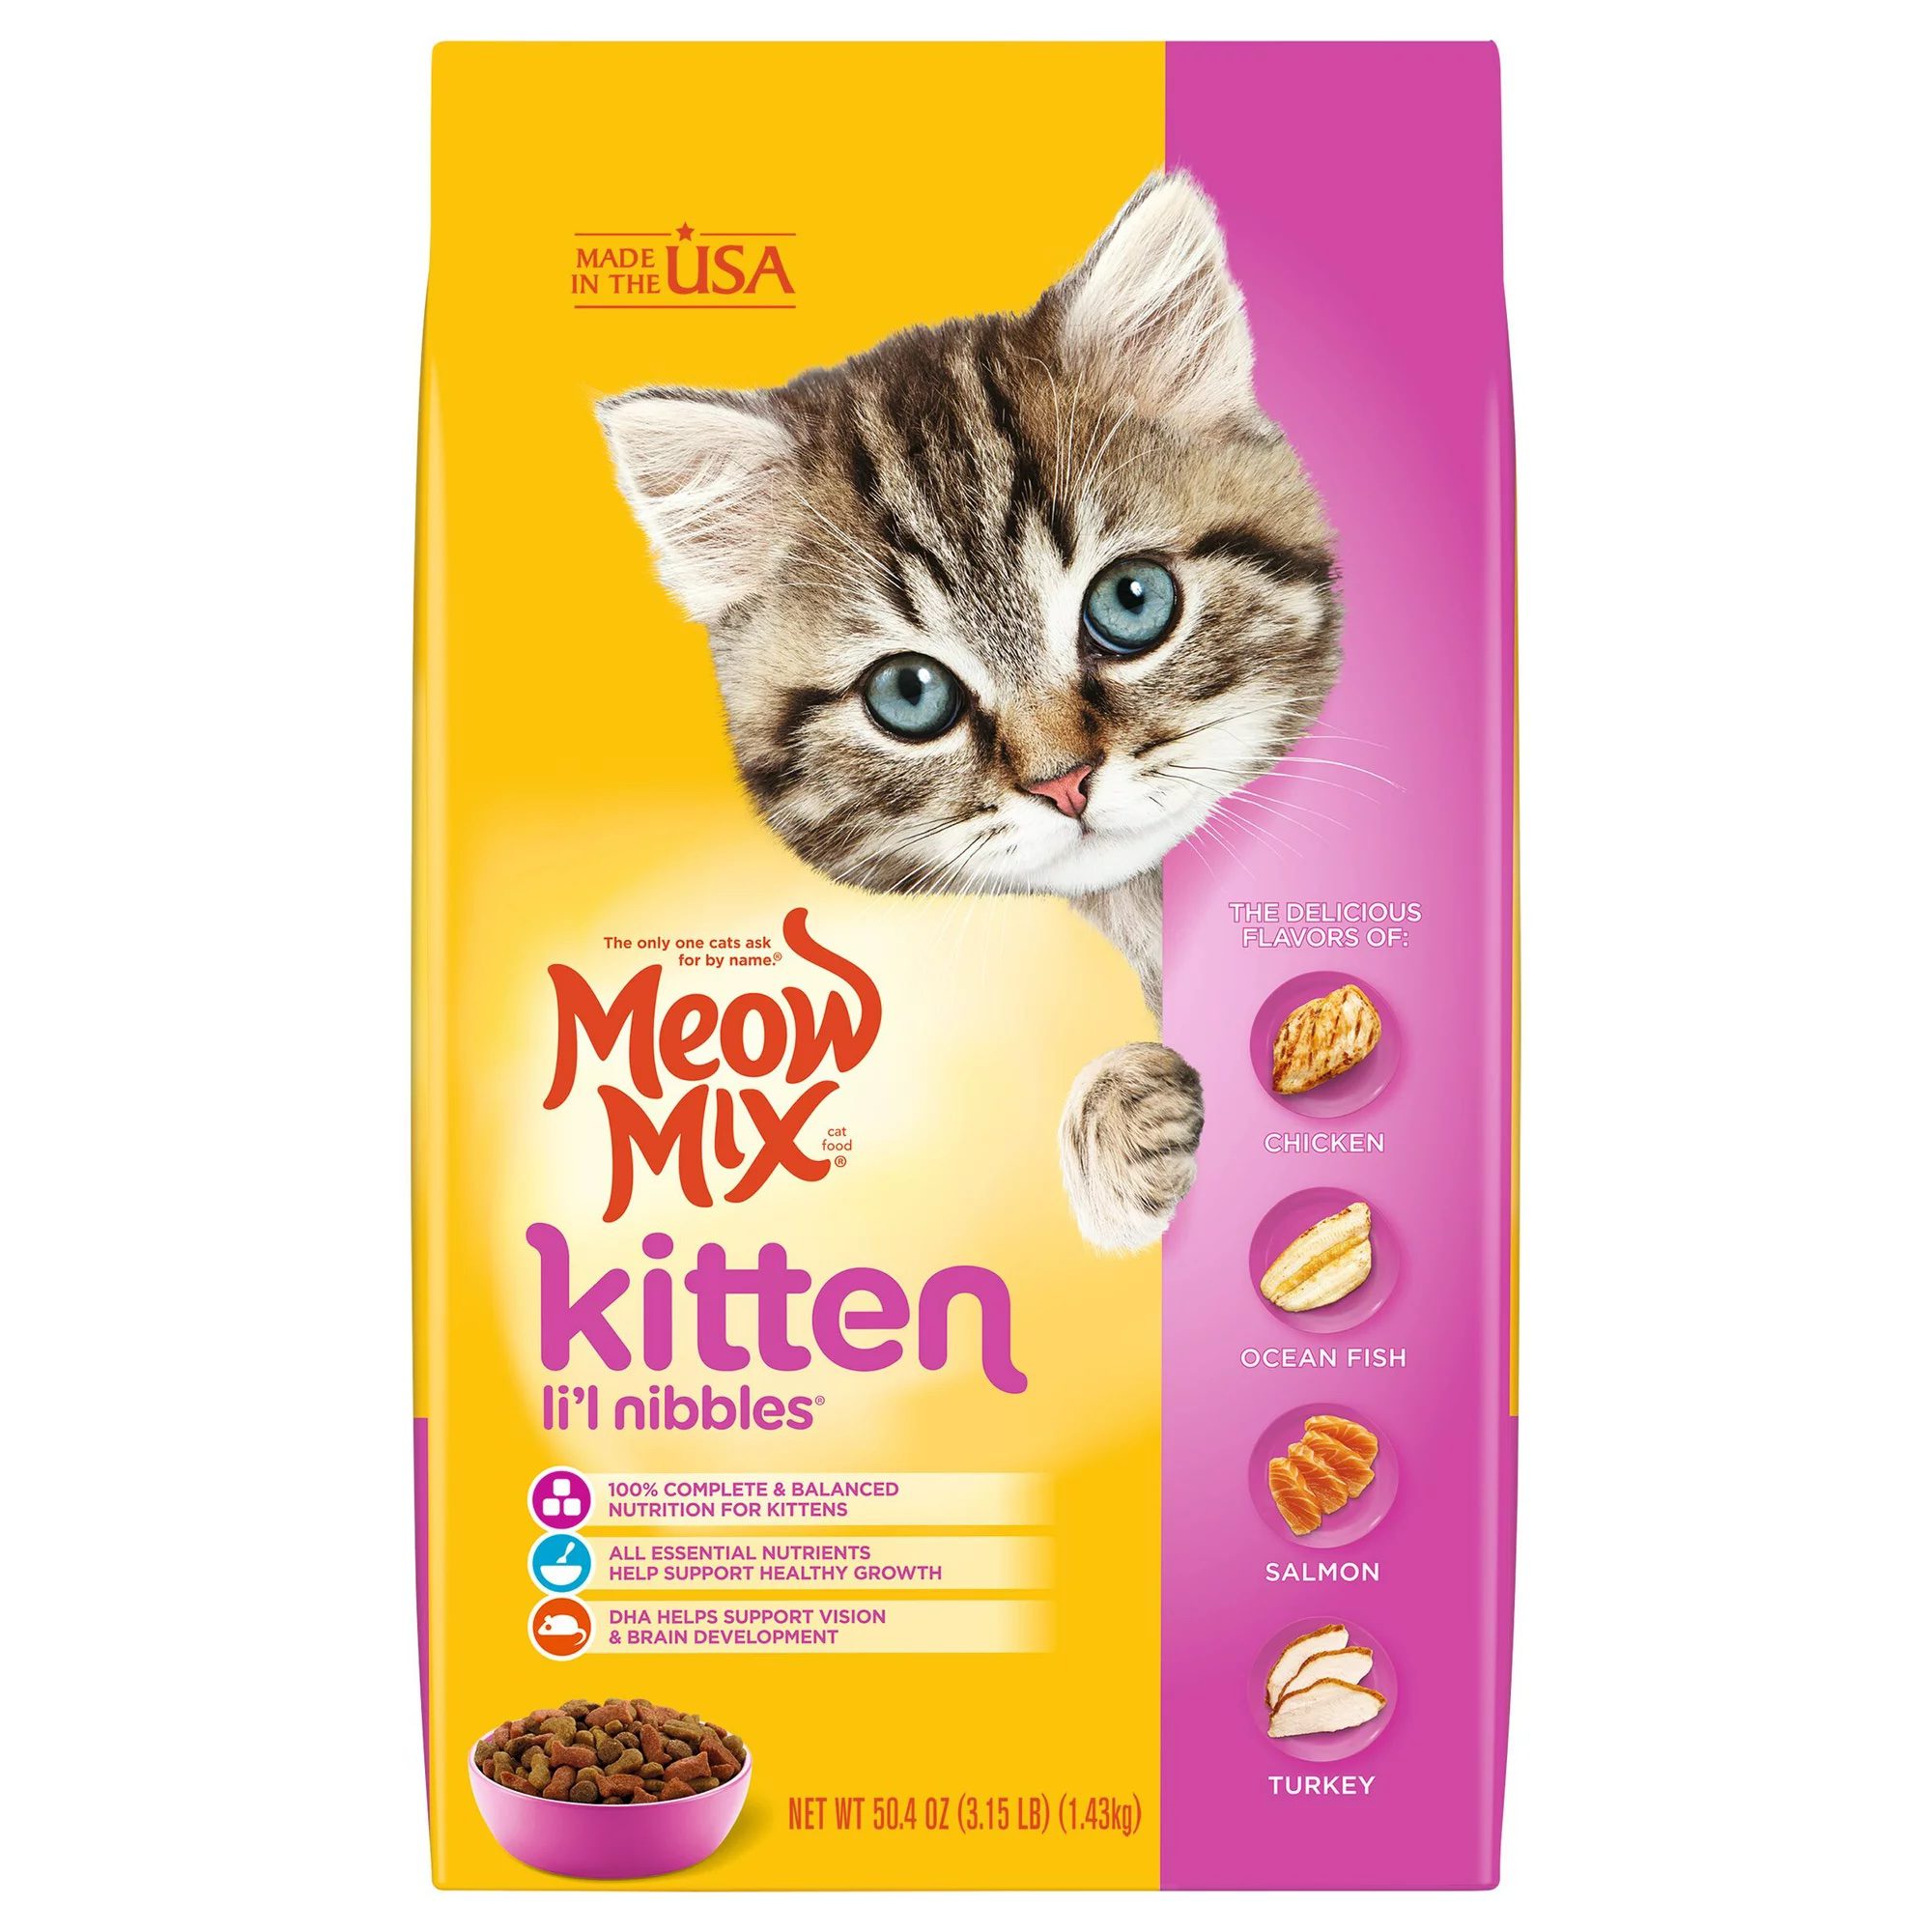 Meow Mix Kitten Li'l Nibbles